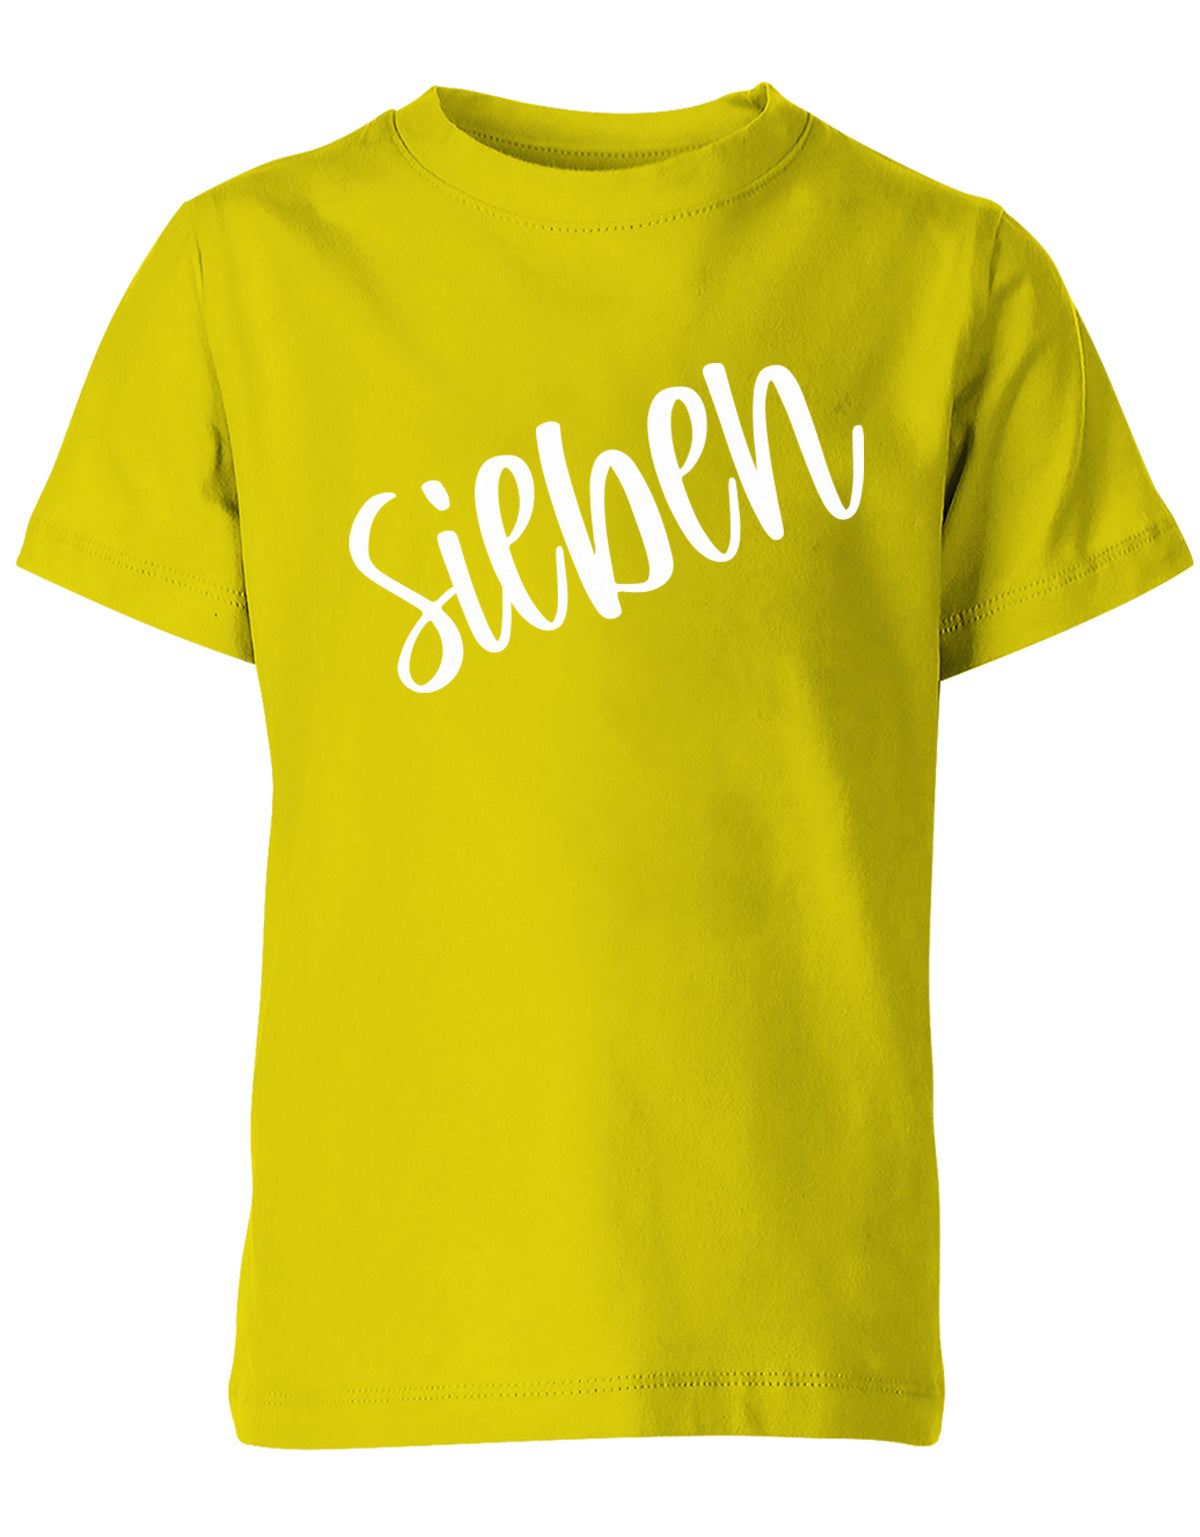 Geburtstags T-Shirt 7 Jahre Junge und Mädchen 7 Schreibschrift Design